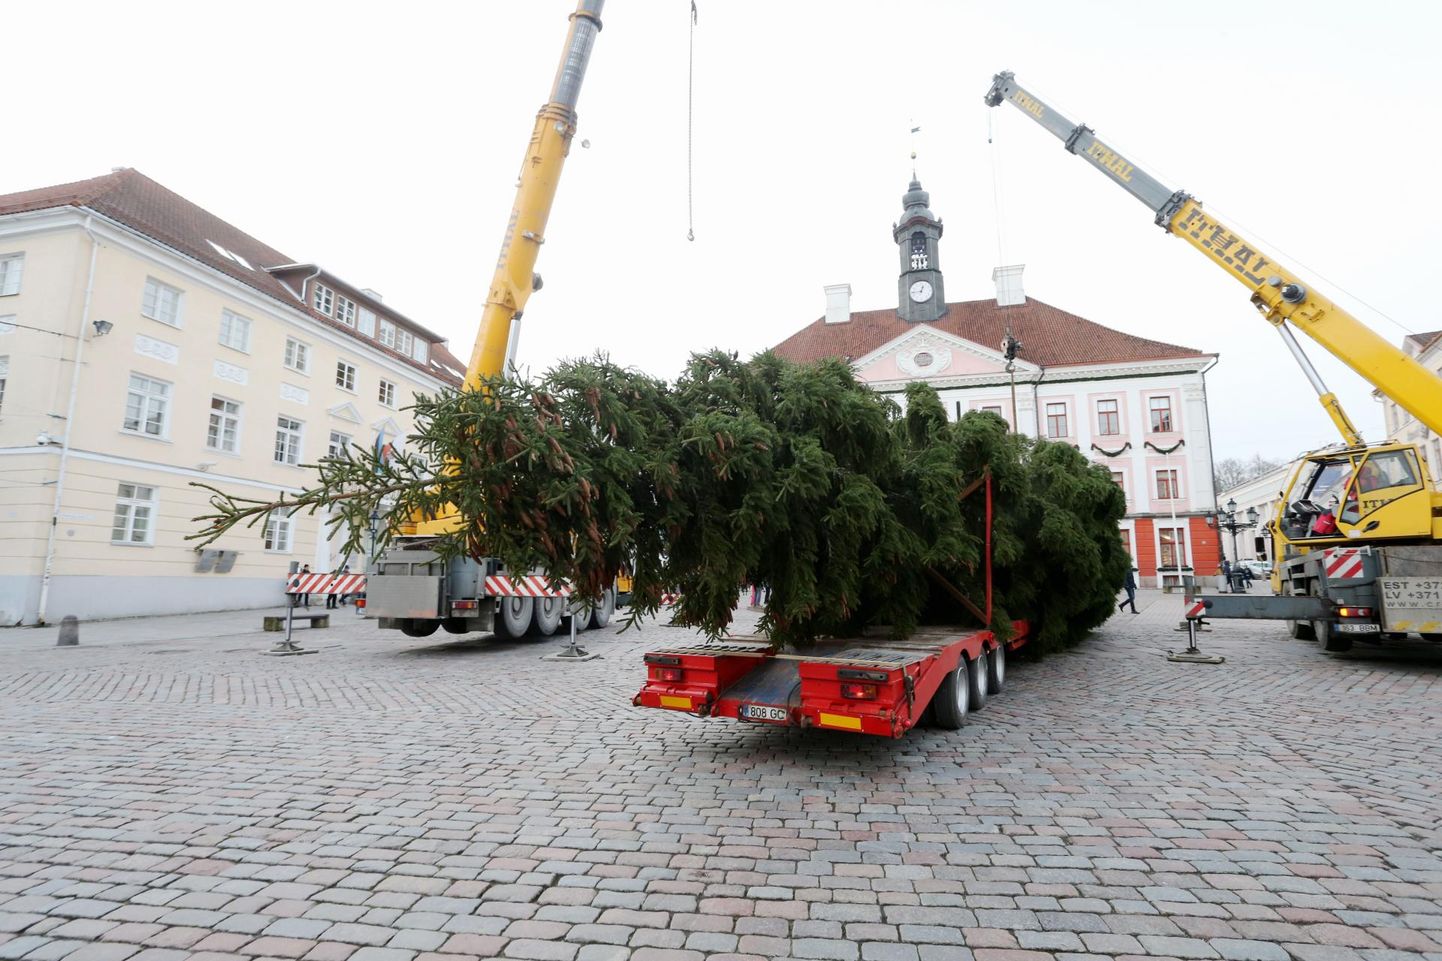 Eelmise aasta Tartu linna jõulupuu toodi Kambja vallast Ivaste külast. 